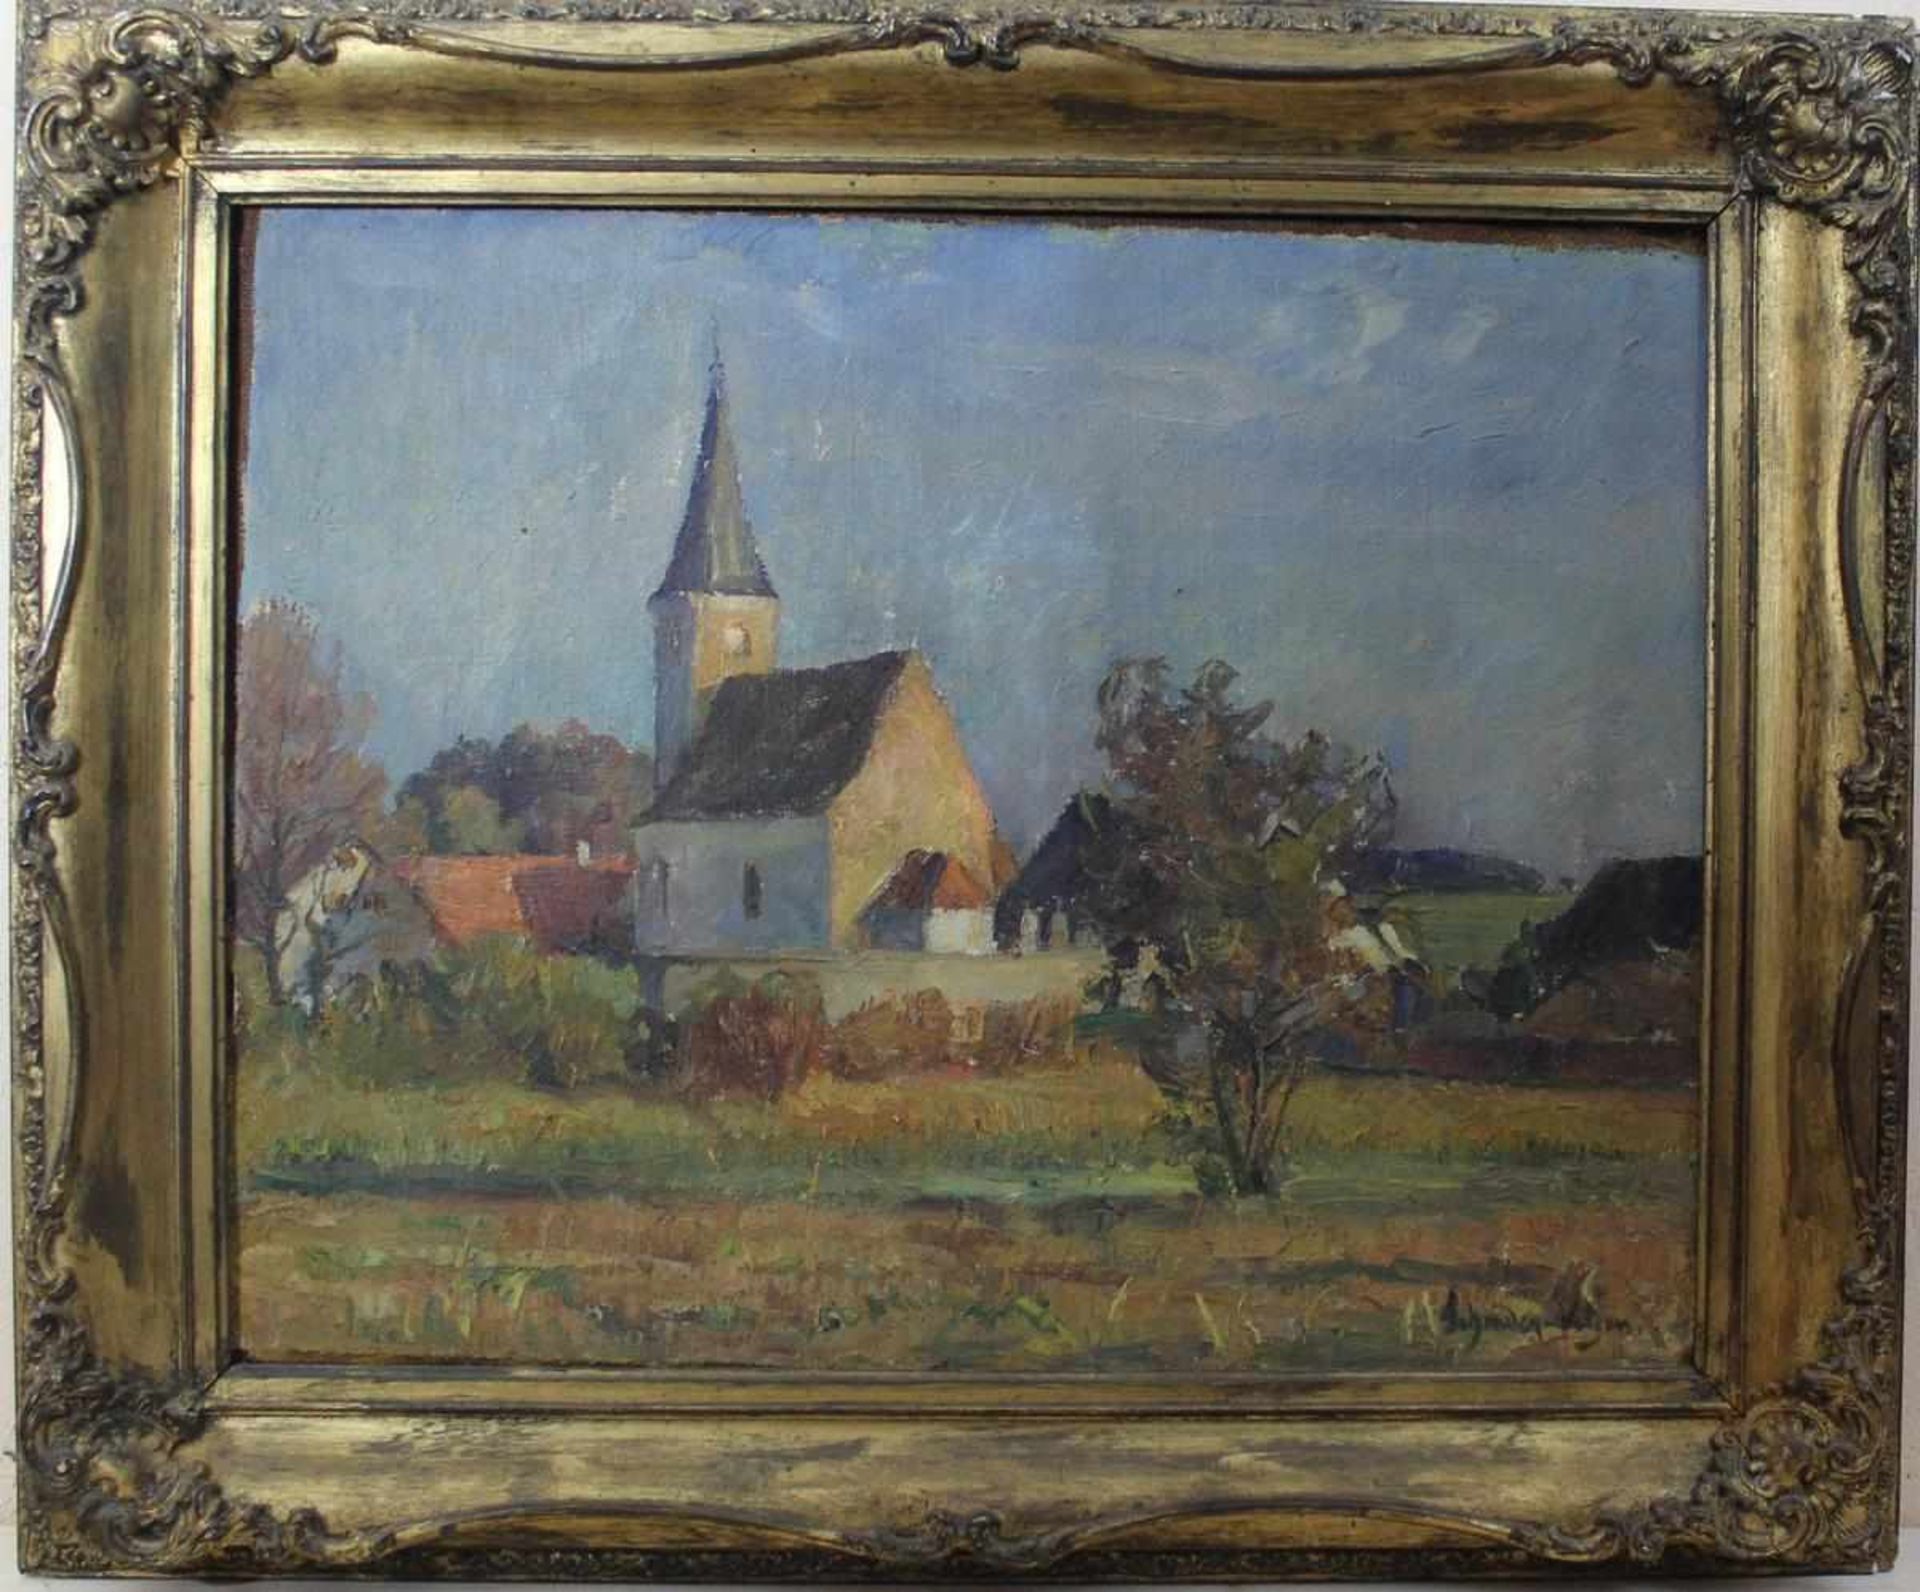 Carl Schrader-Velgen: Ölgemälde Dorfkirche, Öl auf Leinwand, Holzrahmen mit Stuckauflage, ca. 51 x